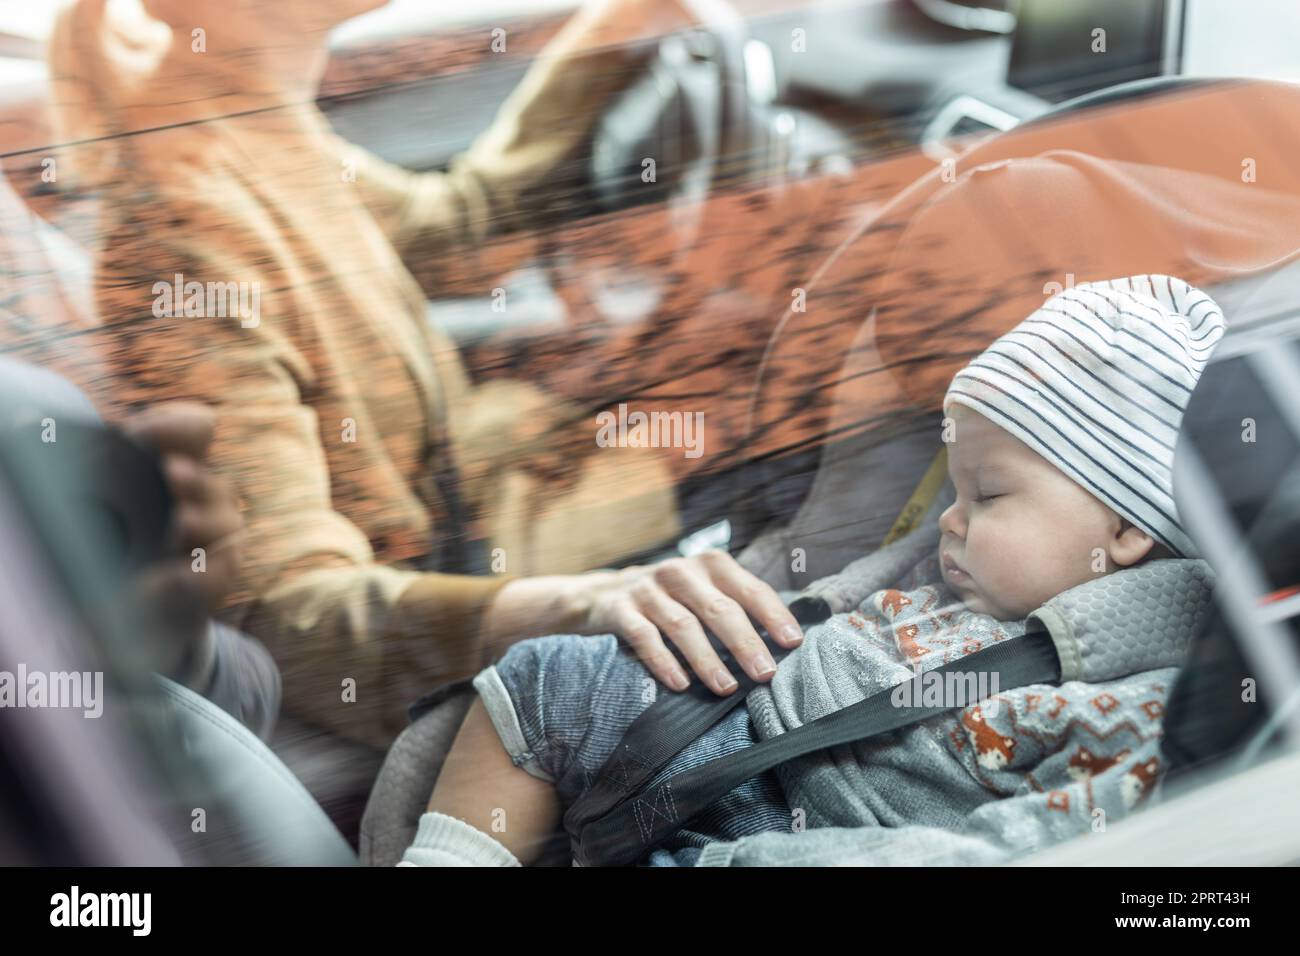 Kind schläft in fahrendem Auto auf Hutablage